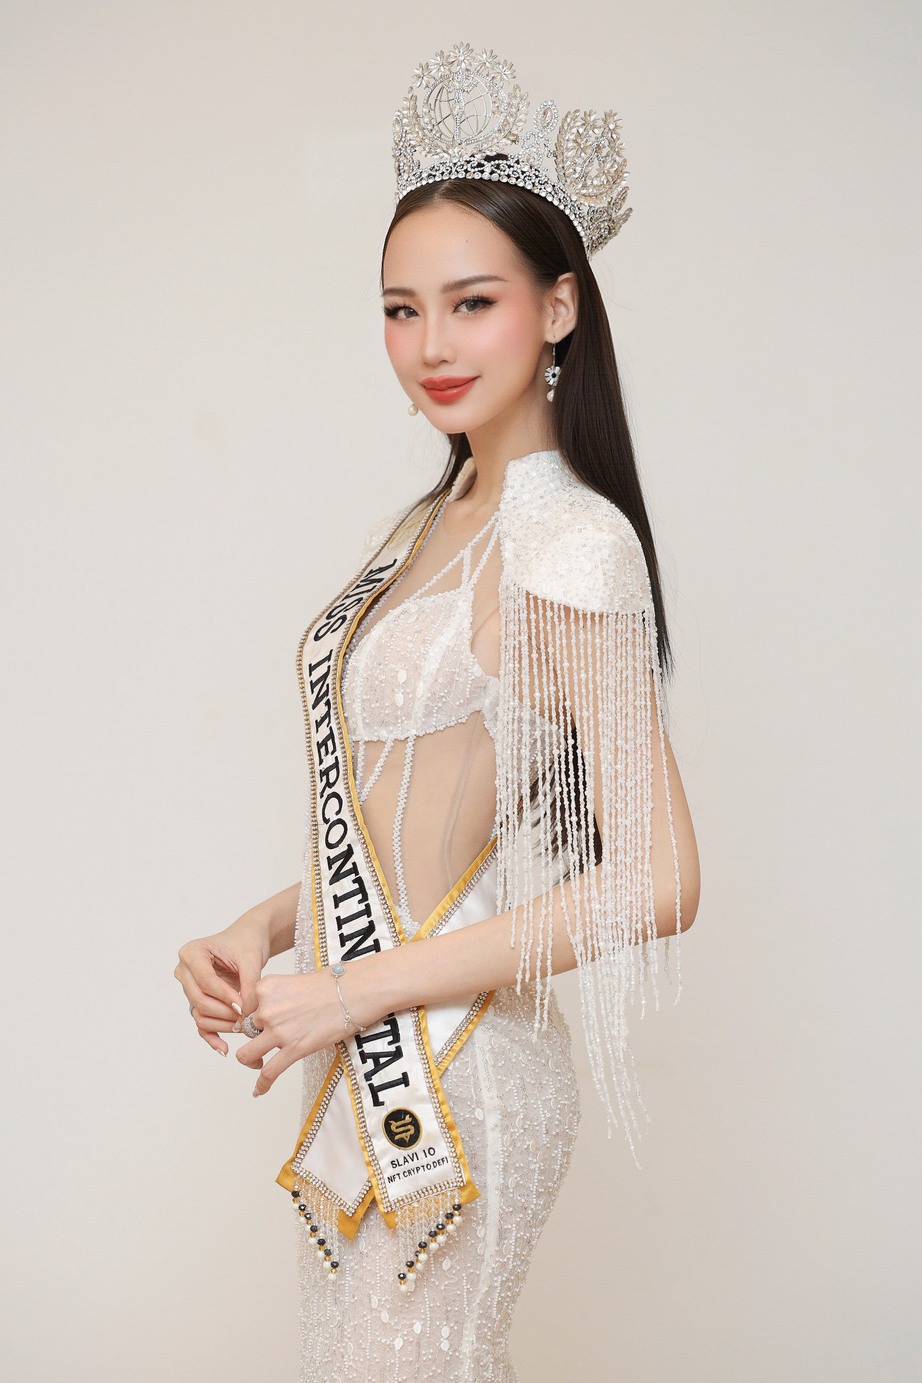 
Đương kim Bảo Ngọc trao sash cho đại diện Việt Nam tại Hoa hậu Liên lục địa 2023 - Ảnh 4.